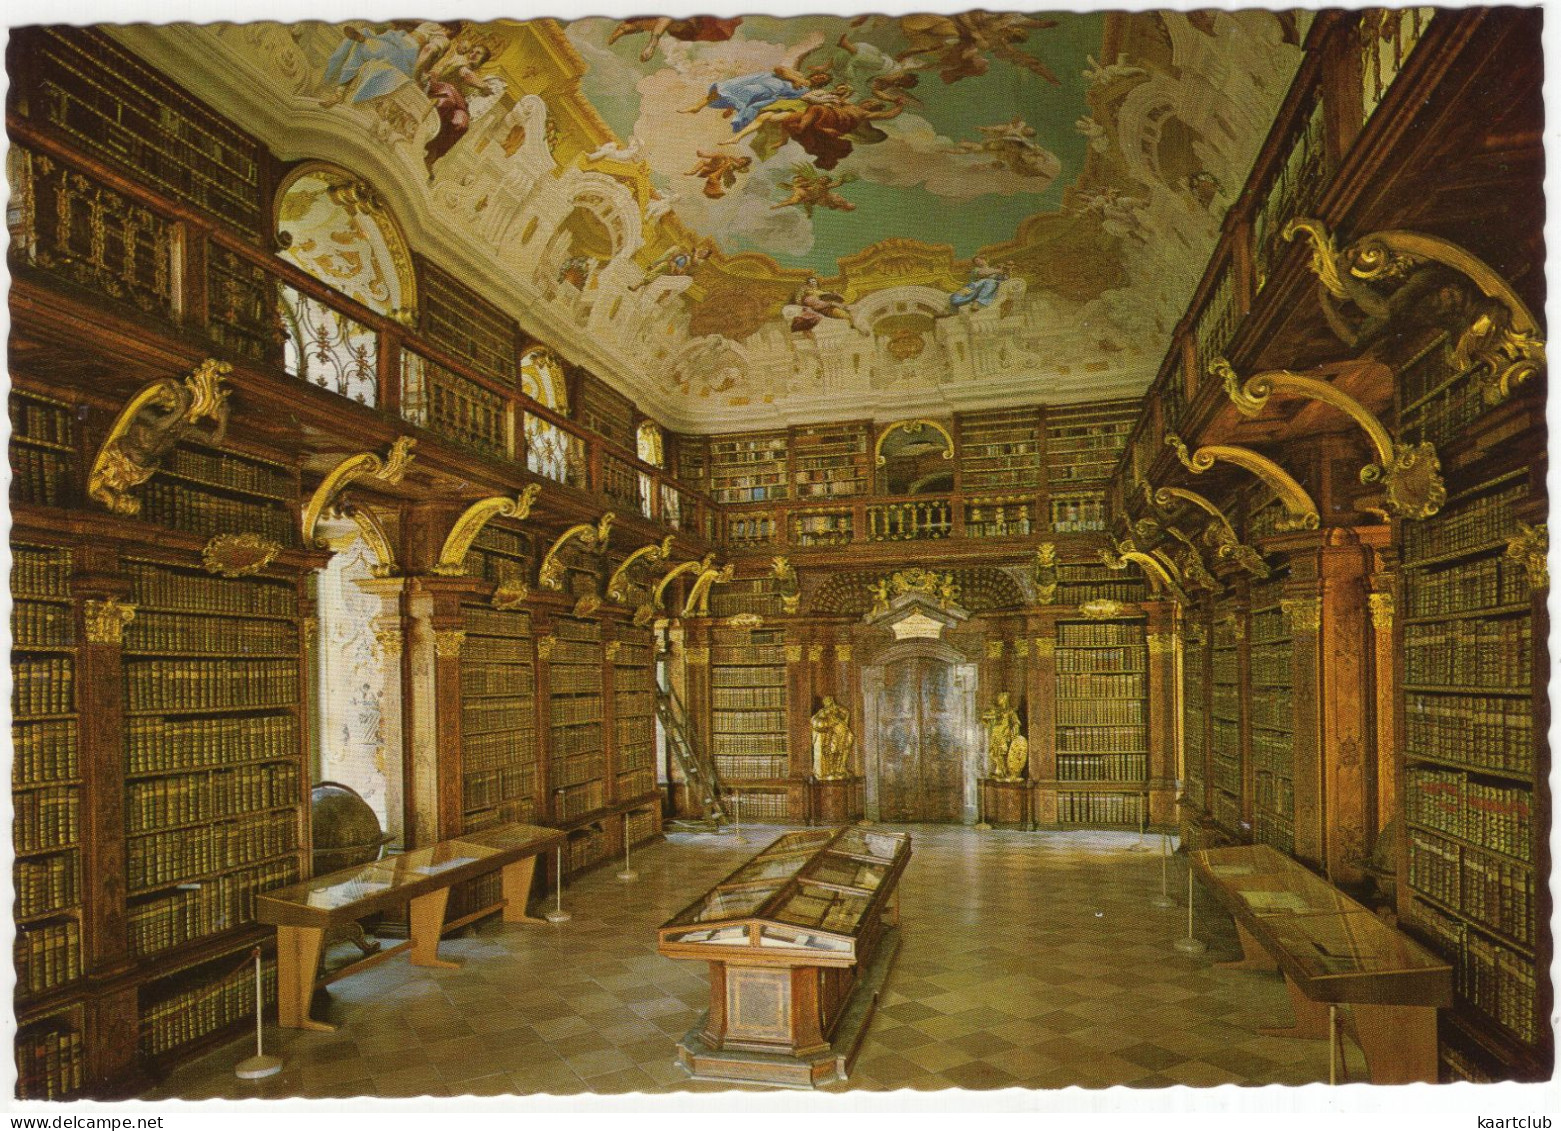 Benediktinerstift Melk A.d. Donau - Nordflügel: Bibliothek 80.000 Bände  - (NÖ, Österreich/Austria) - Library - Melk